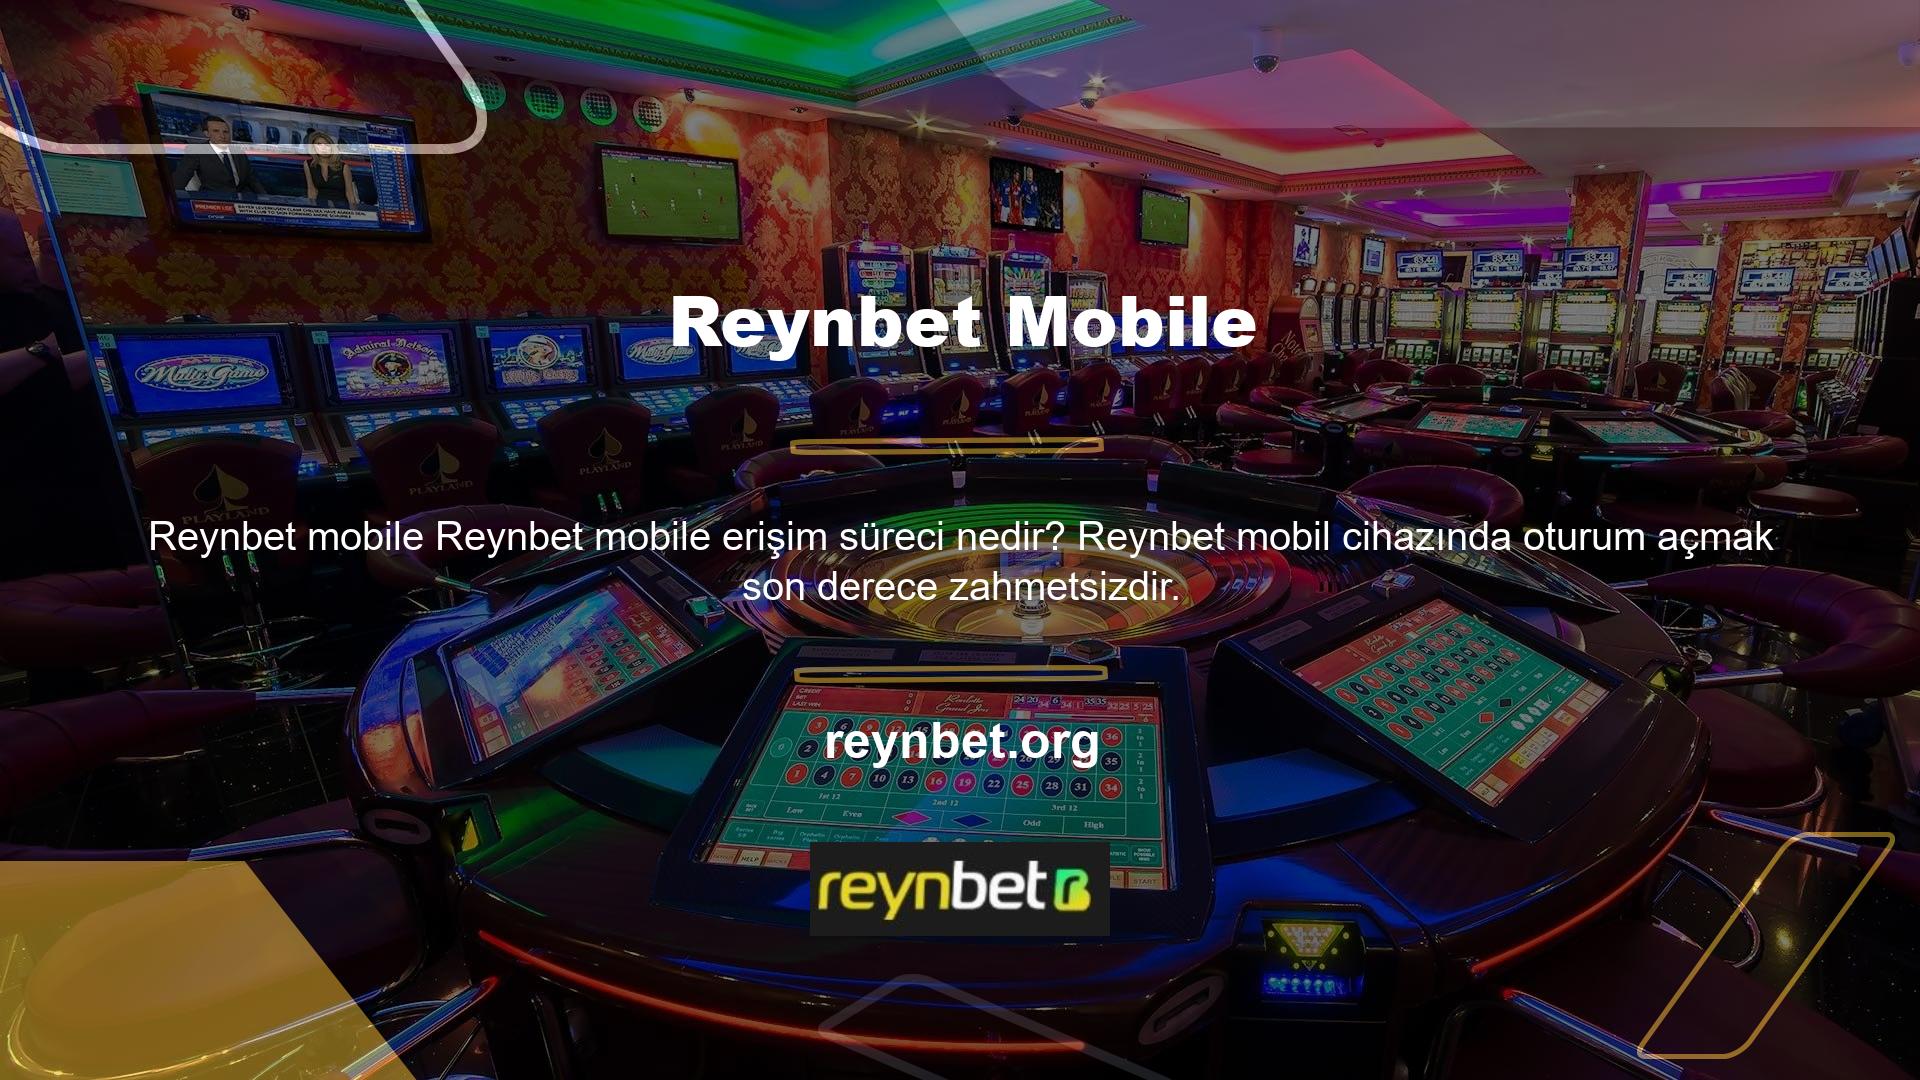 ' Canlı Reynbet şirketleri mobil Reynbet sağlayıcıları olarak anılırken, mobil versiyona yalnızca web sitesi ayarlarından ulaşılabilir